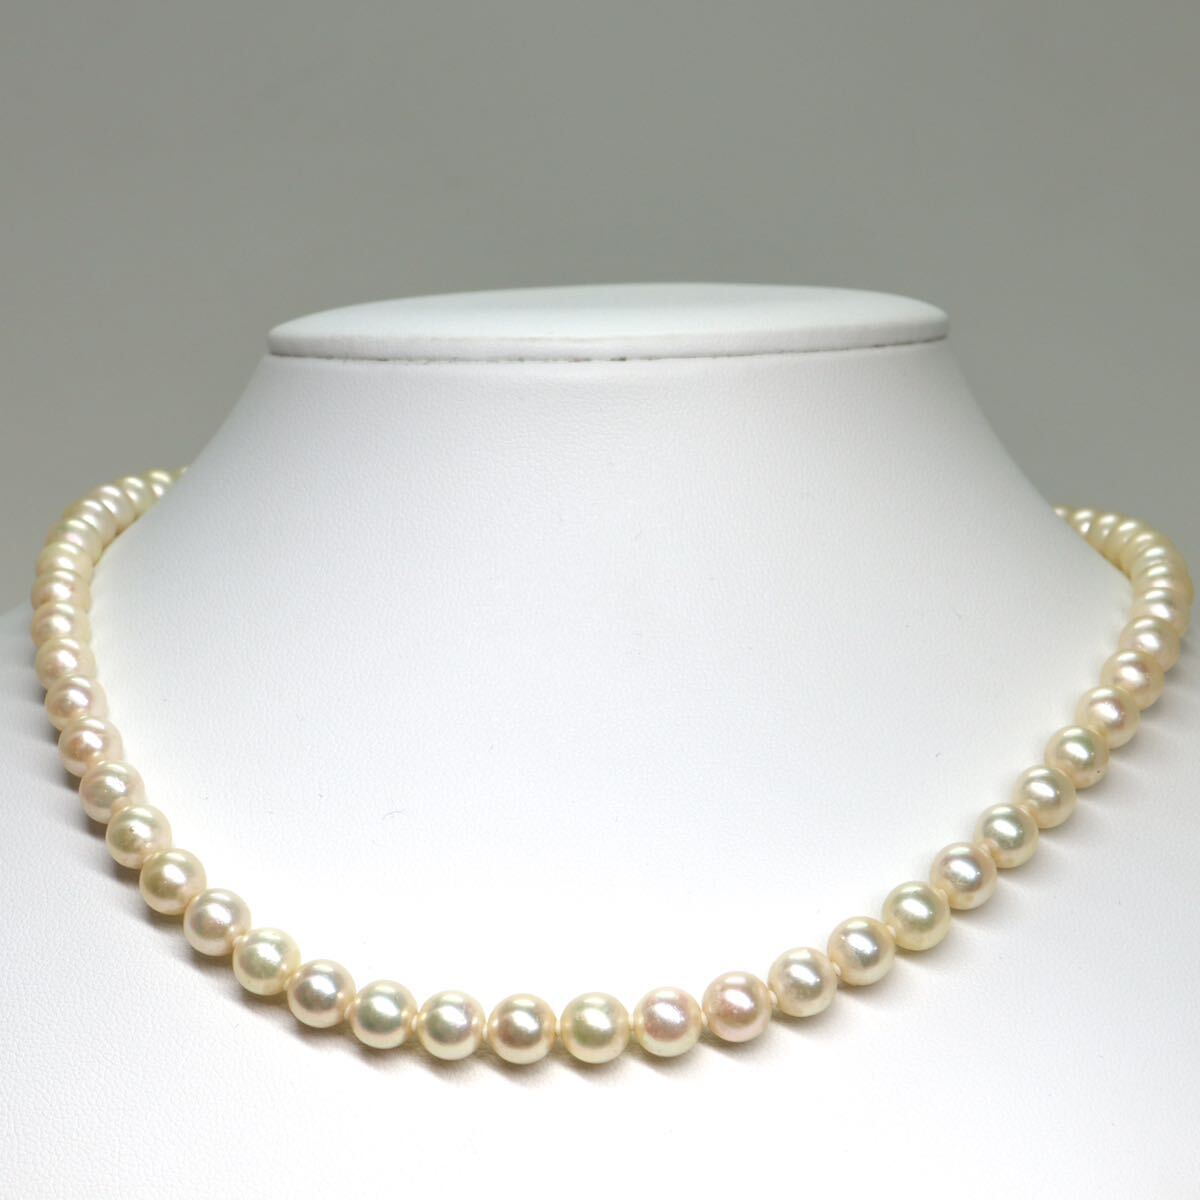 《アコヤ本真珠ネックレス》A 約6.5-7.0mm珠 29.4g 約42cm pearl necklace ジュエリー jewelry DB0/DB0の画像2